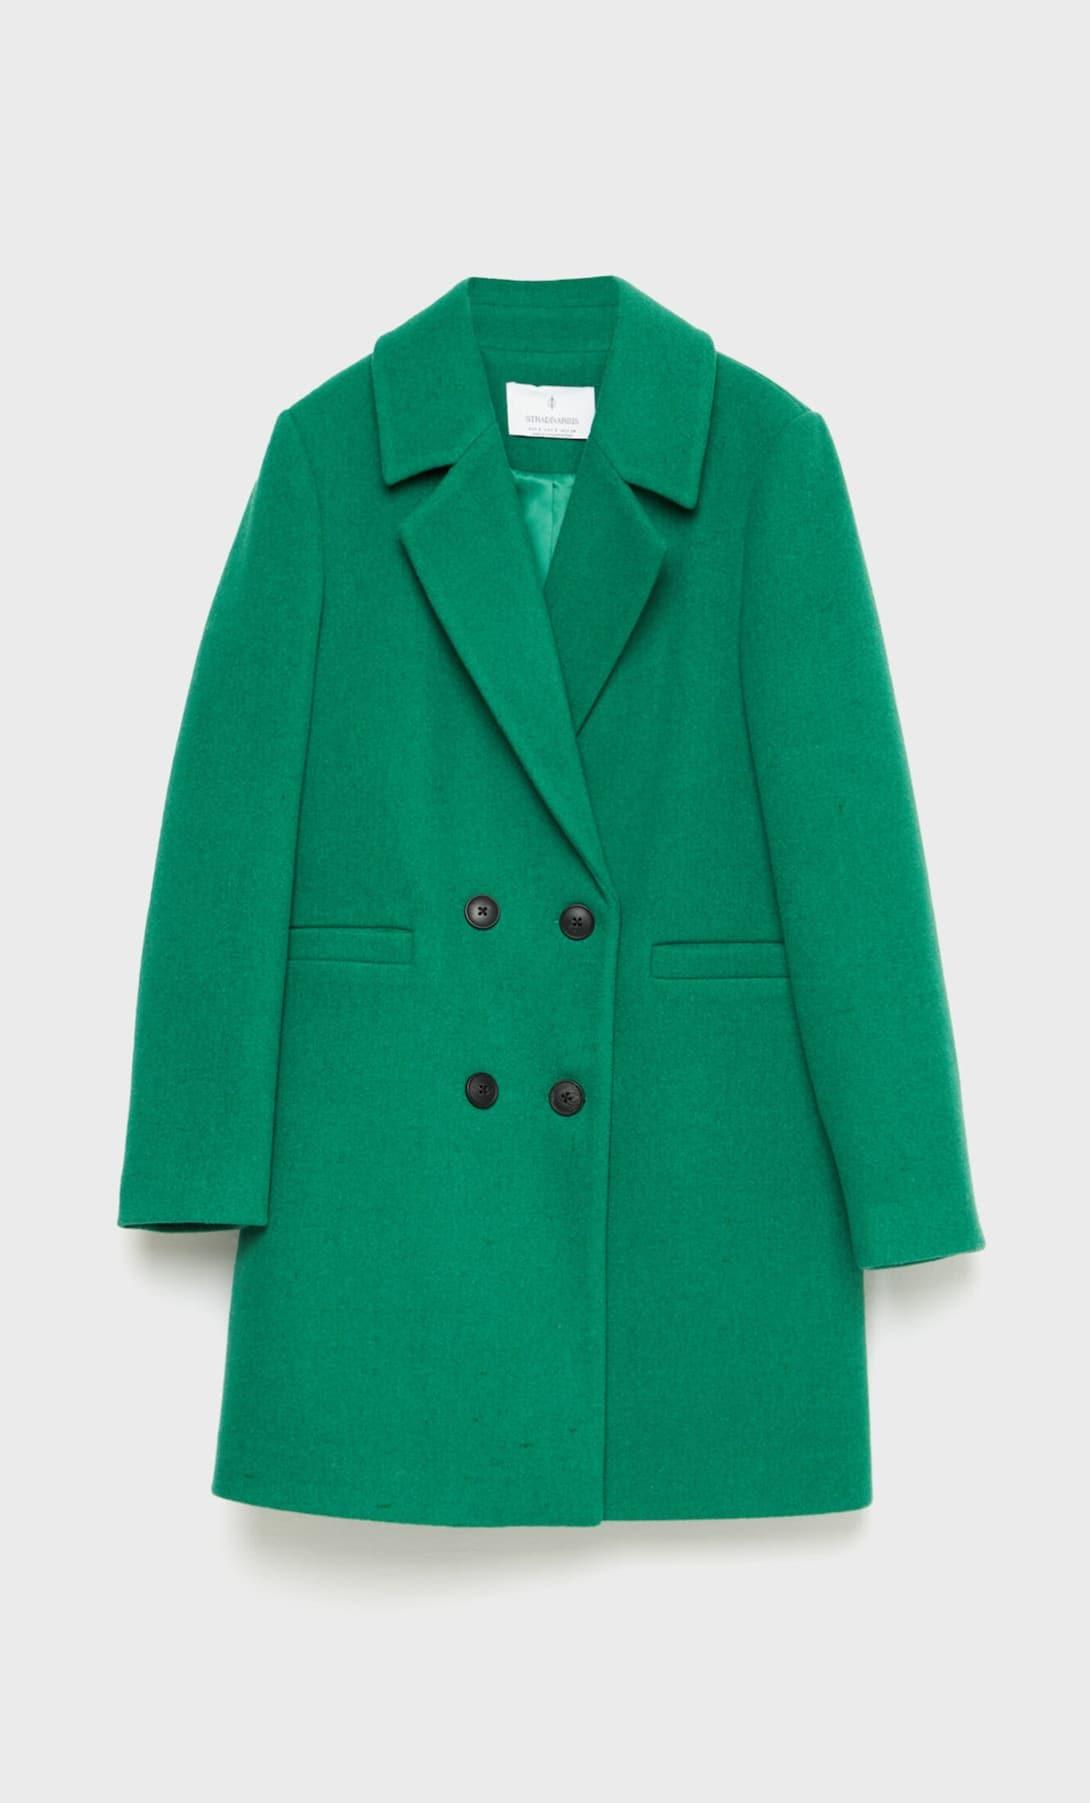 Triunfar en invierno es fácil con el nuevo abrigo de Zara 